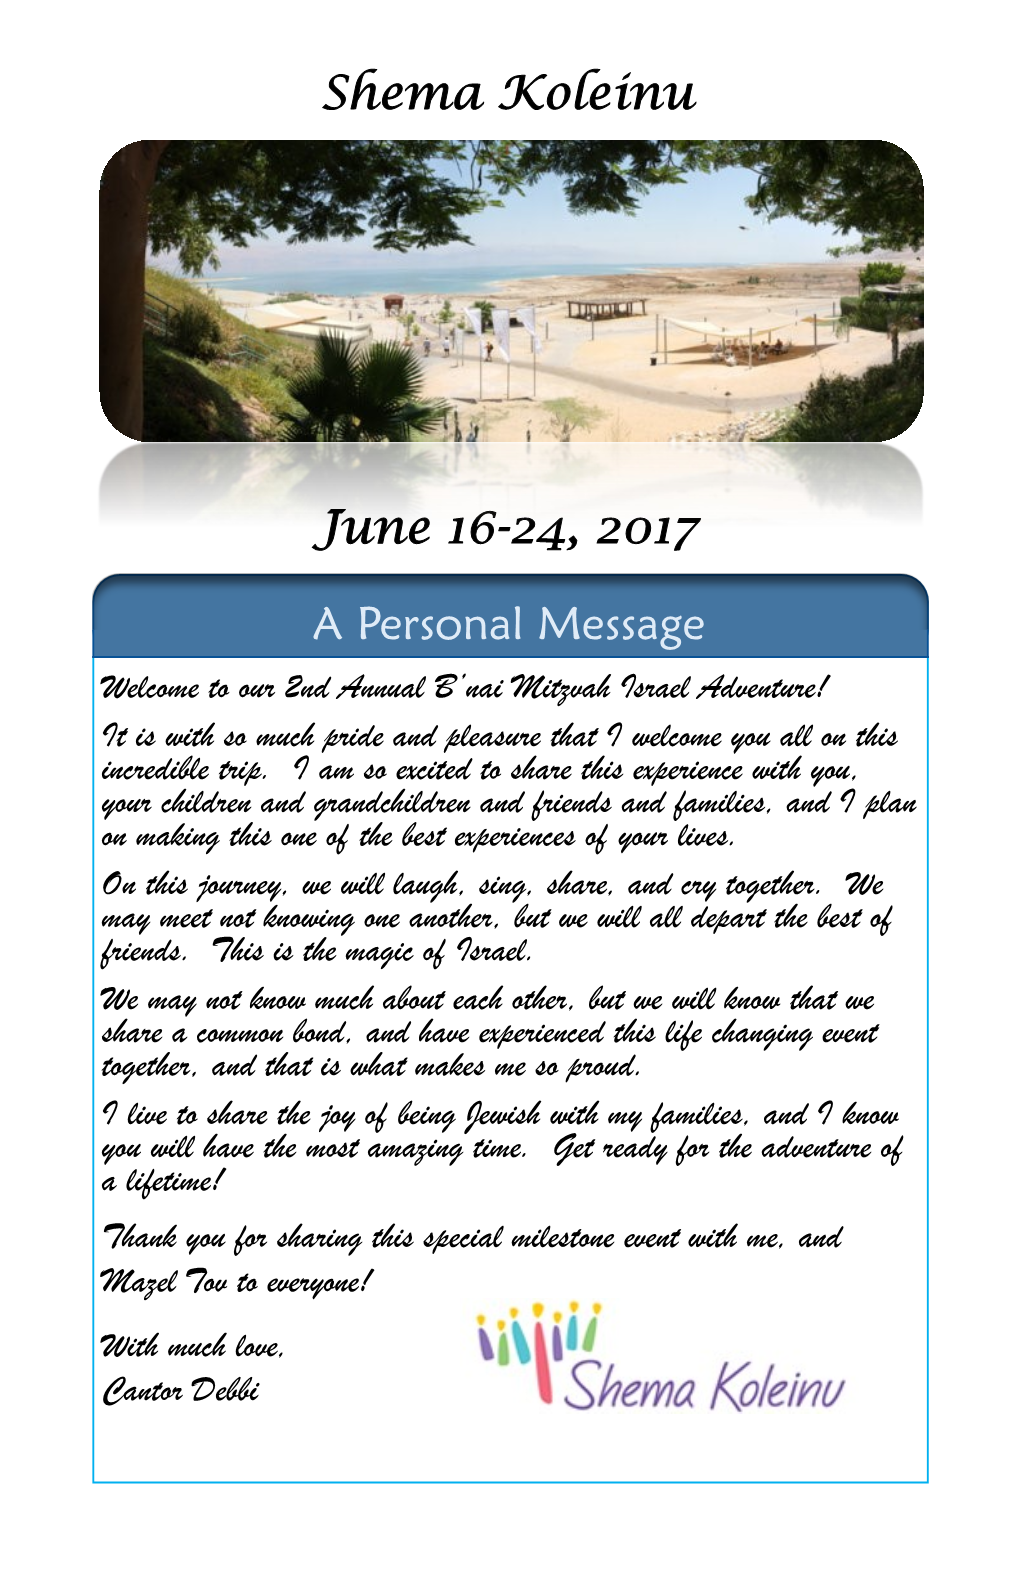 Shema Koleinu June 16-24, 2017